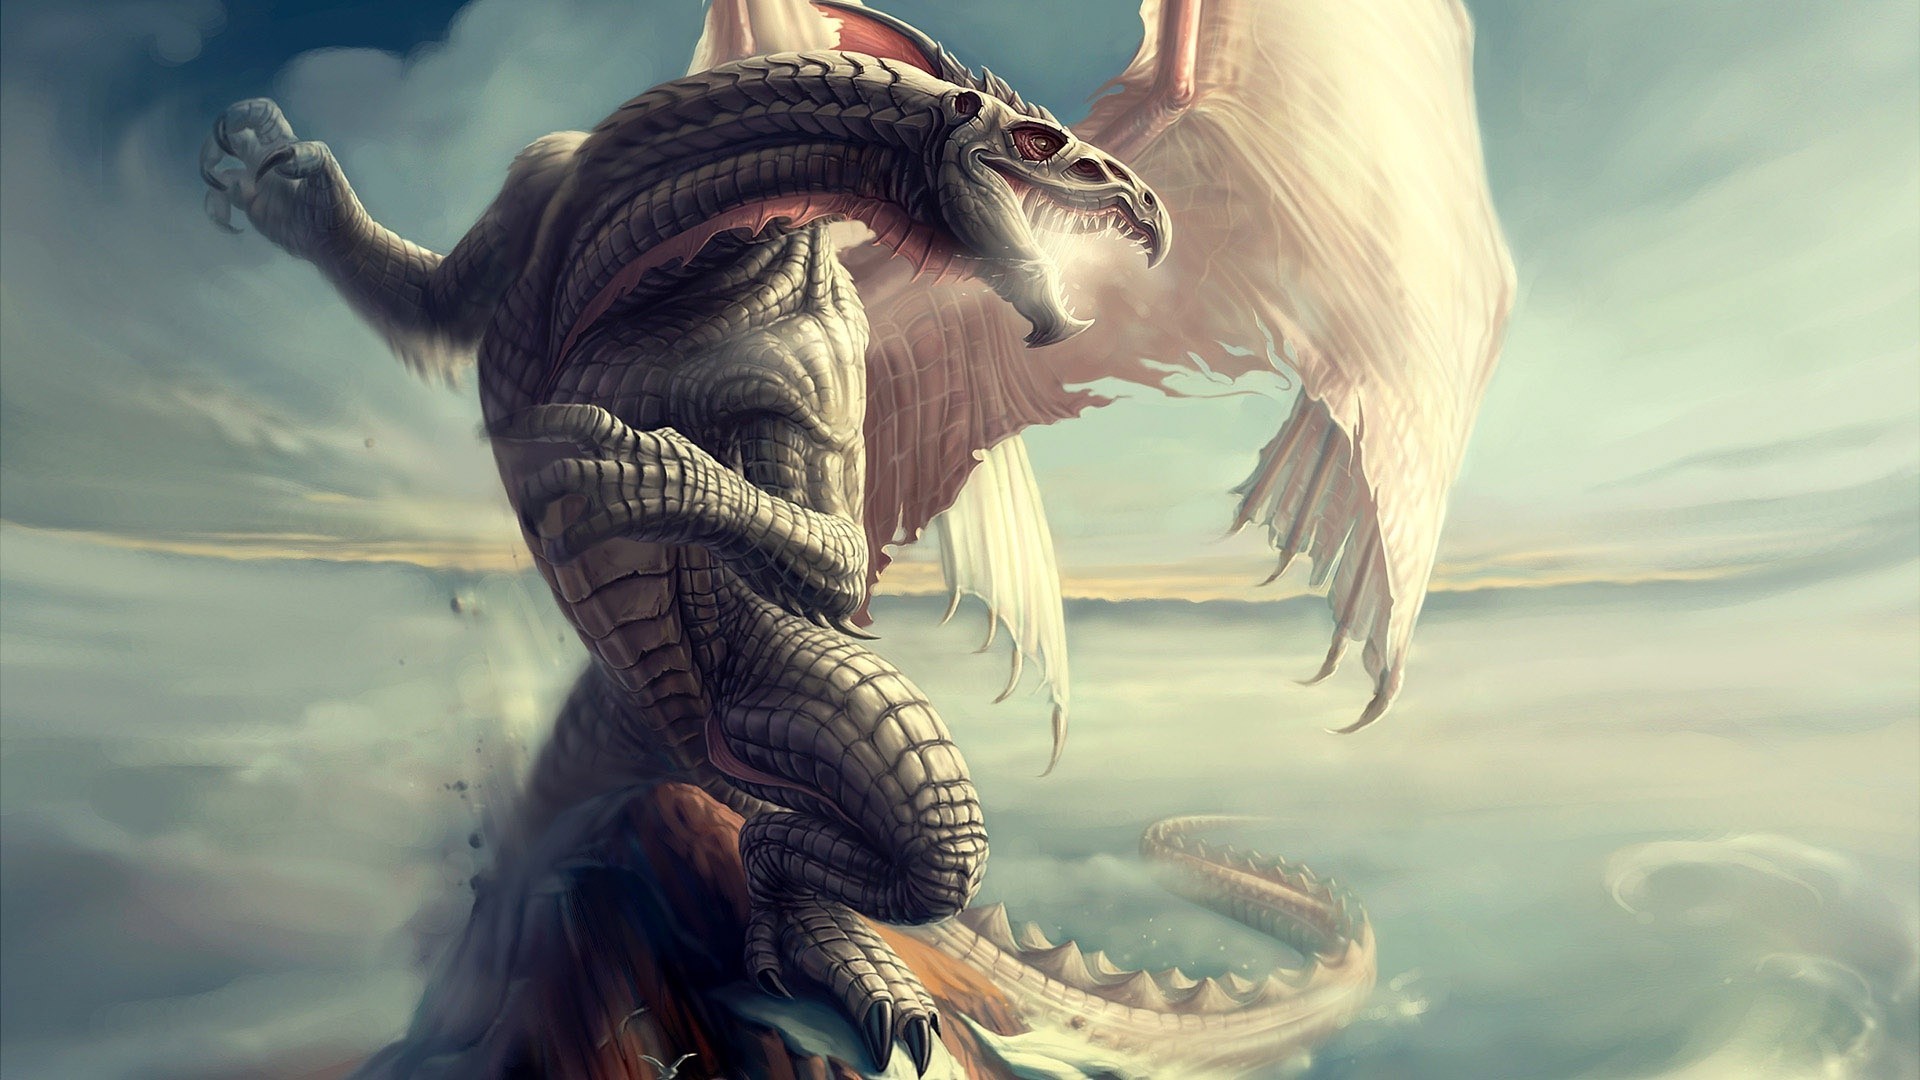 mejor fondo de pantalla de dragón,continuar,cg artwork,mitología,personaje de ficción,criatura mítica